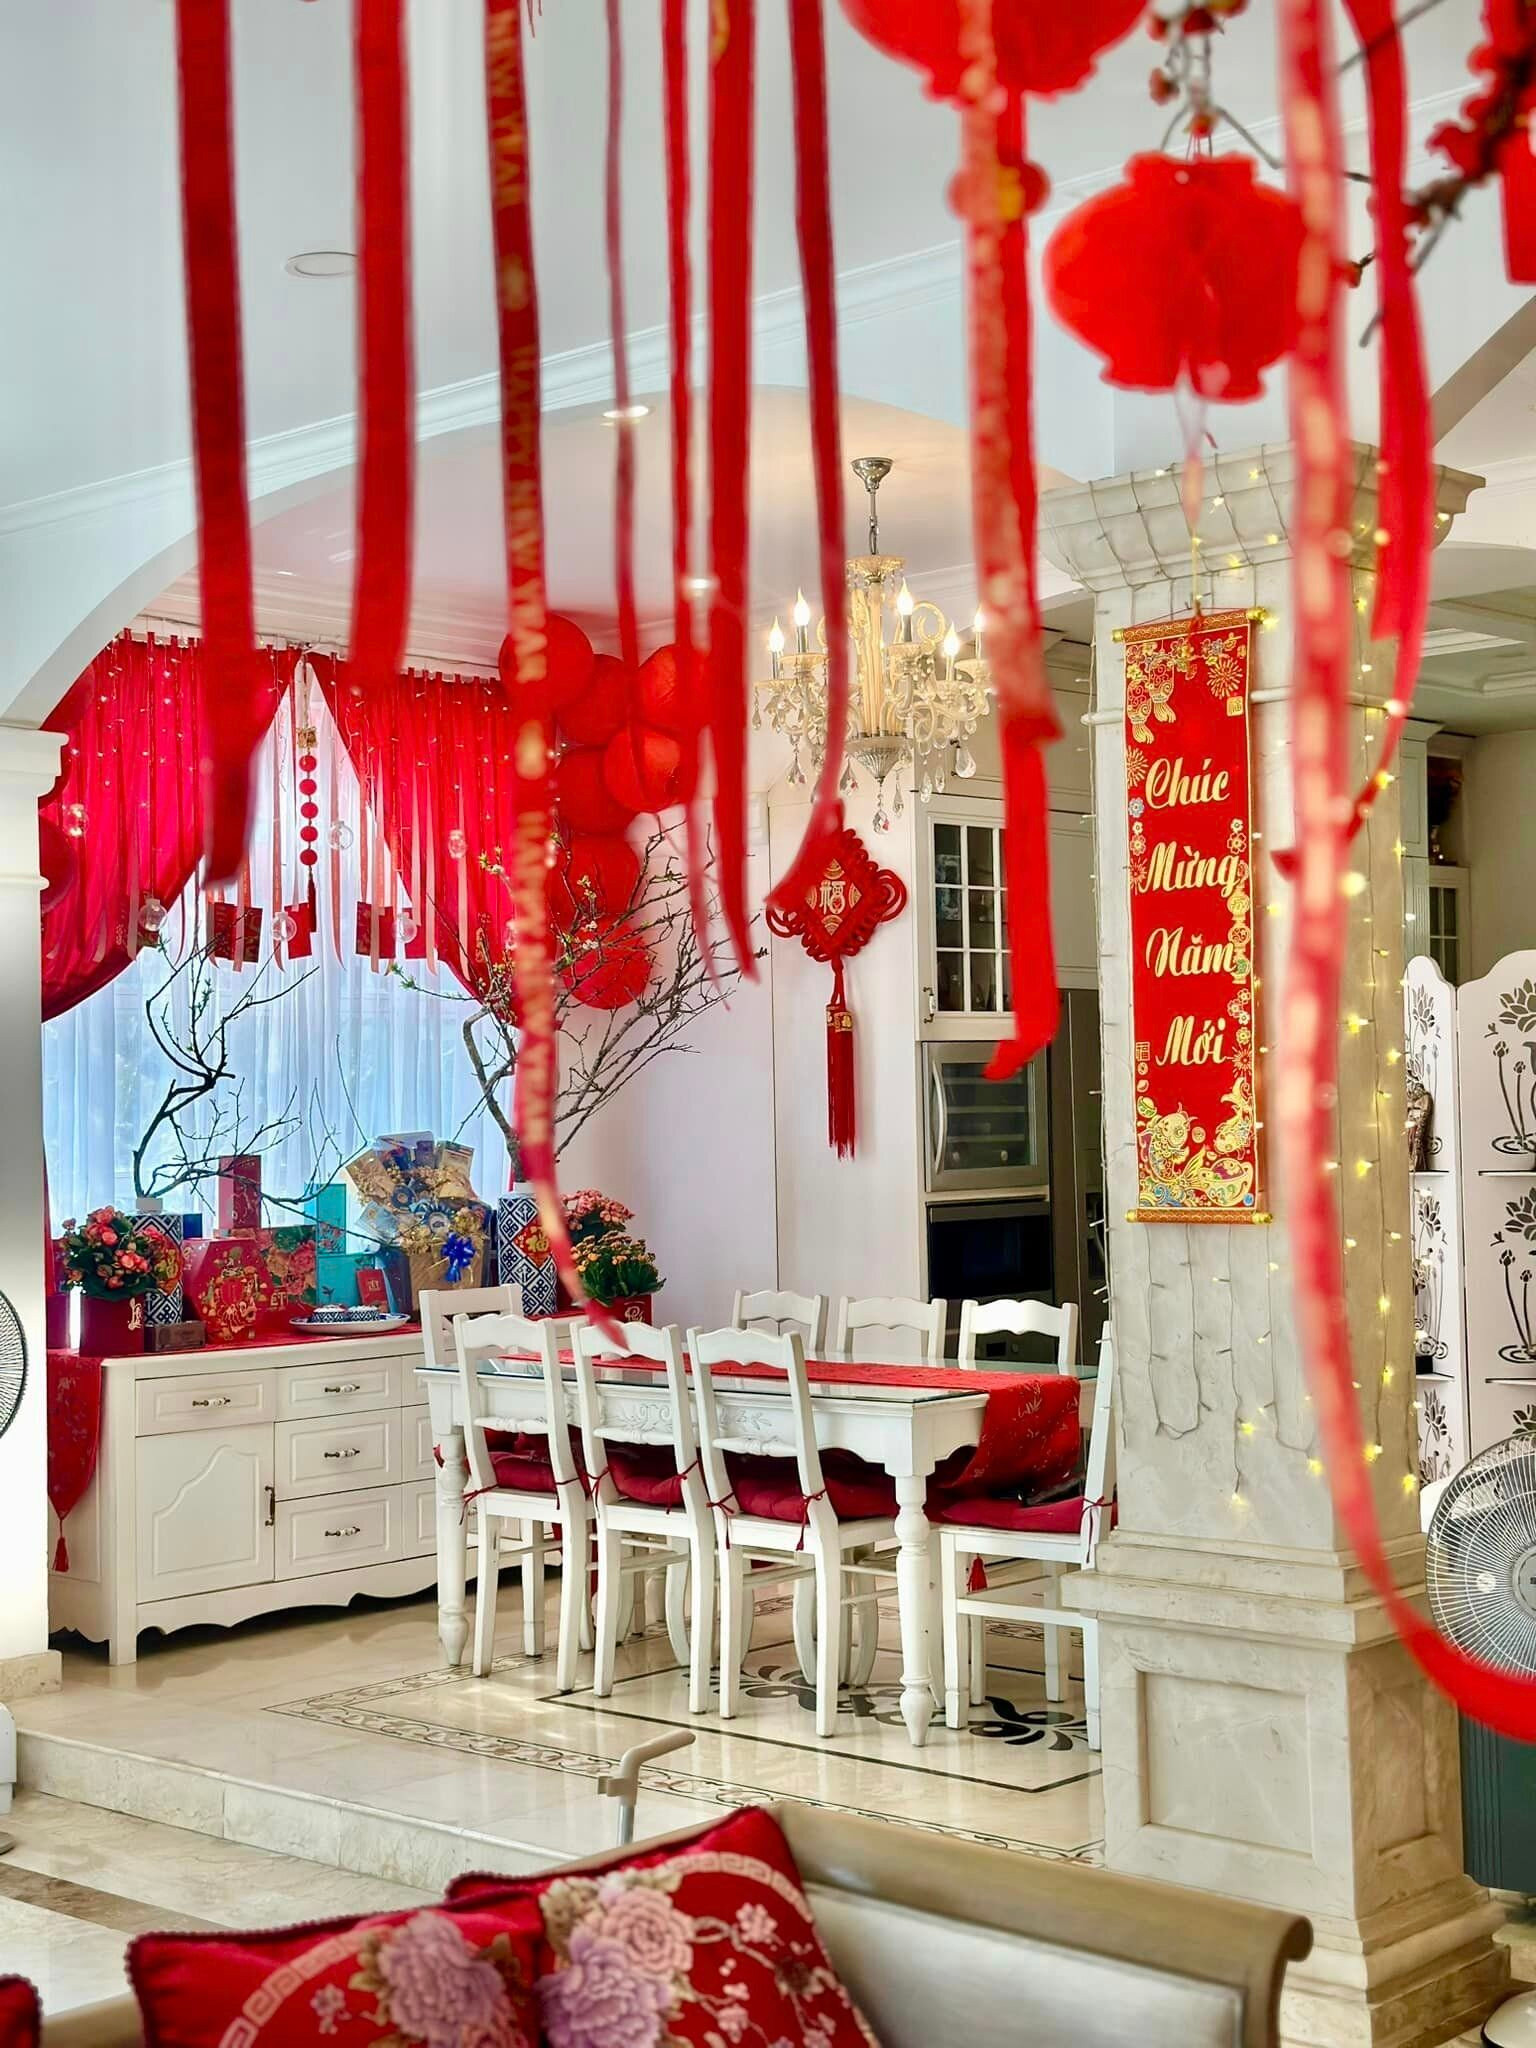 Thúy Hạnh lựa chọn những món đồ trang trí có màu đỏ rực rỡ để tô điểm cho phòng khách của gia đình, màu đỏ cũng là màu được ưa chuộng vào dịp năm mới, với ý nghĩa cầu mong những điều may mắn, tốt lành.